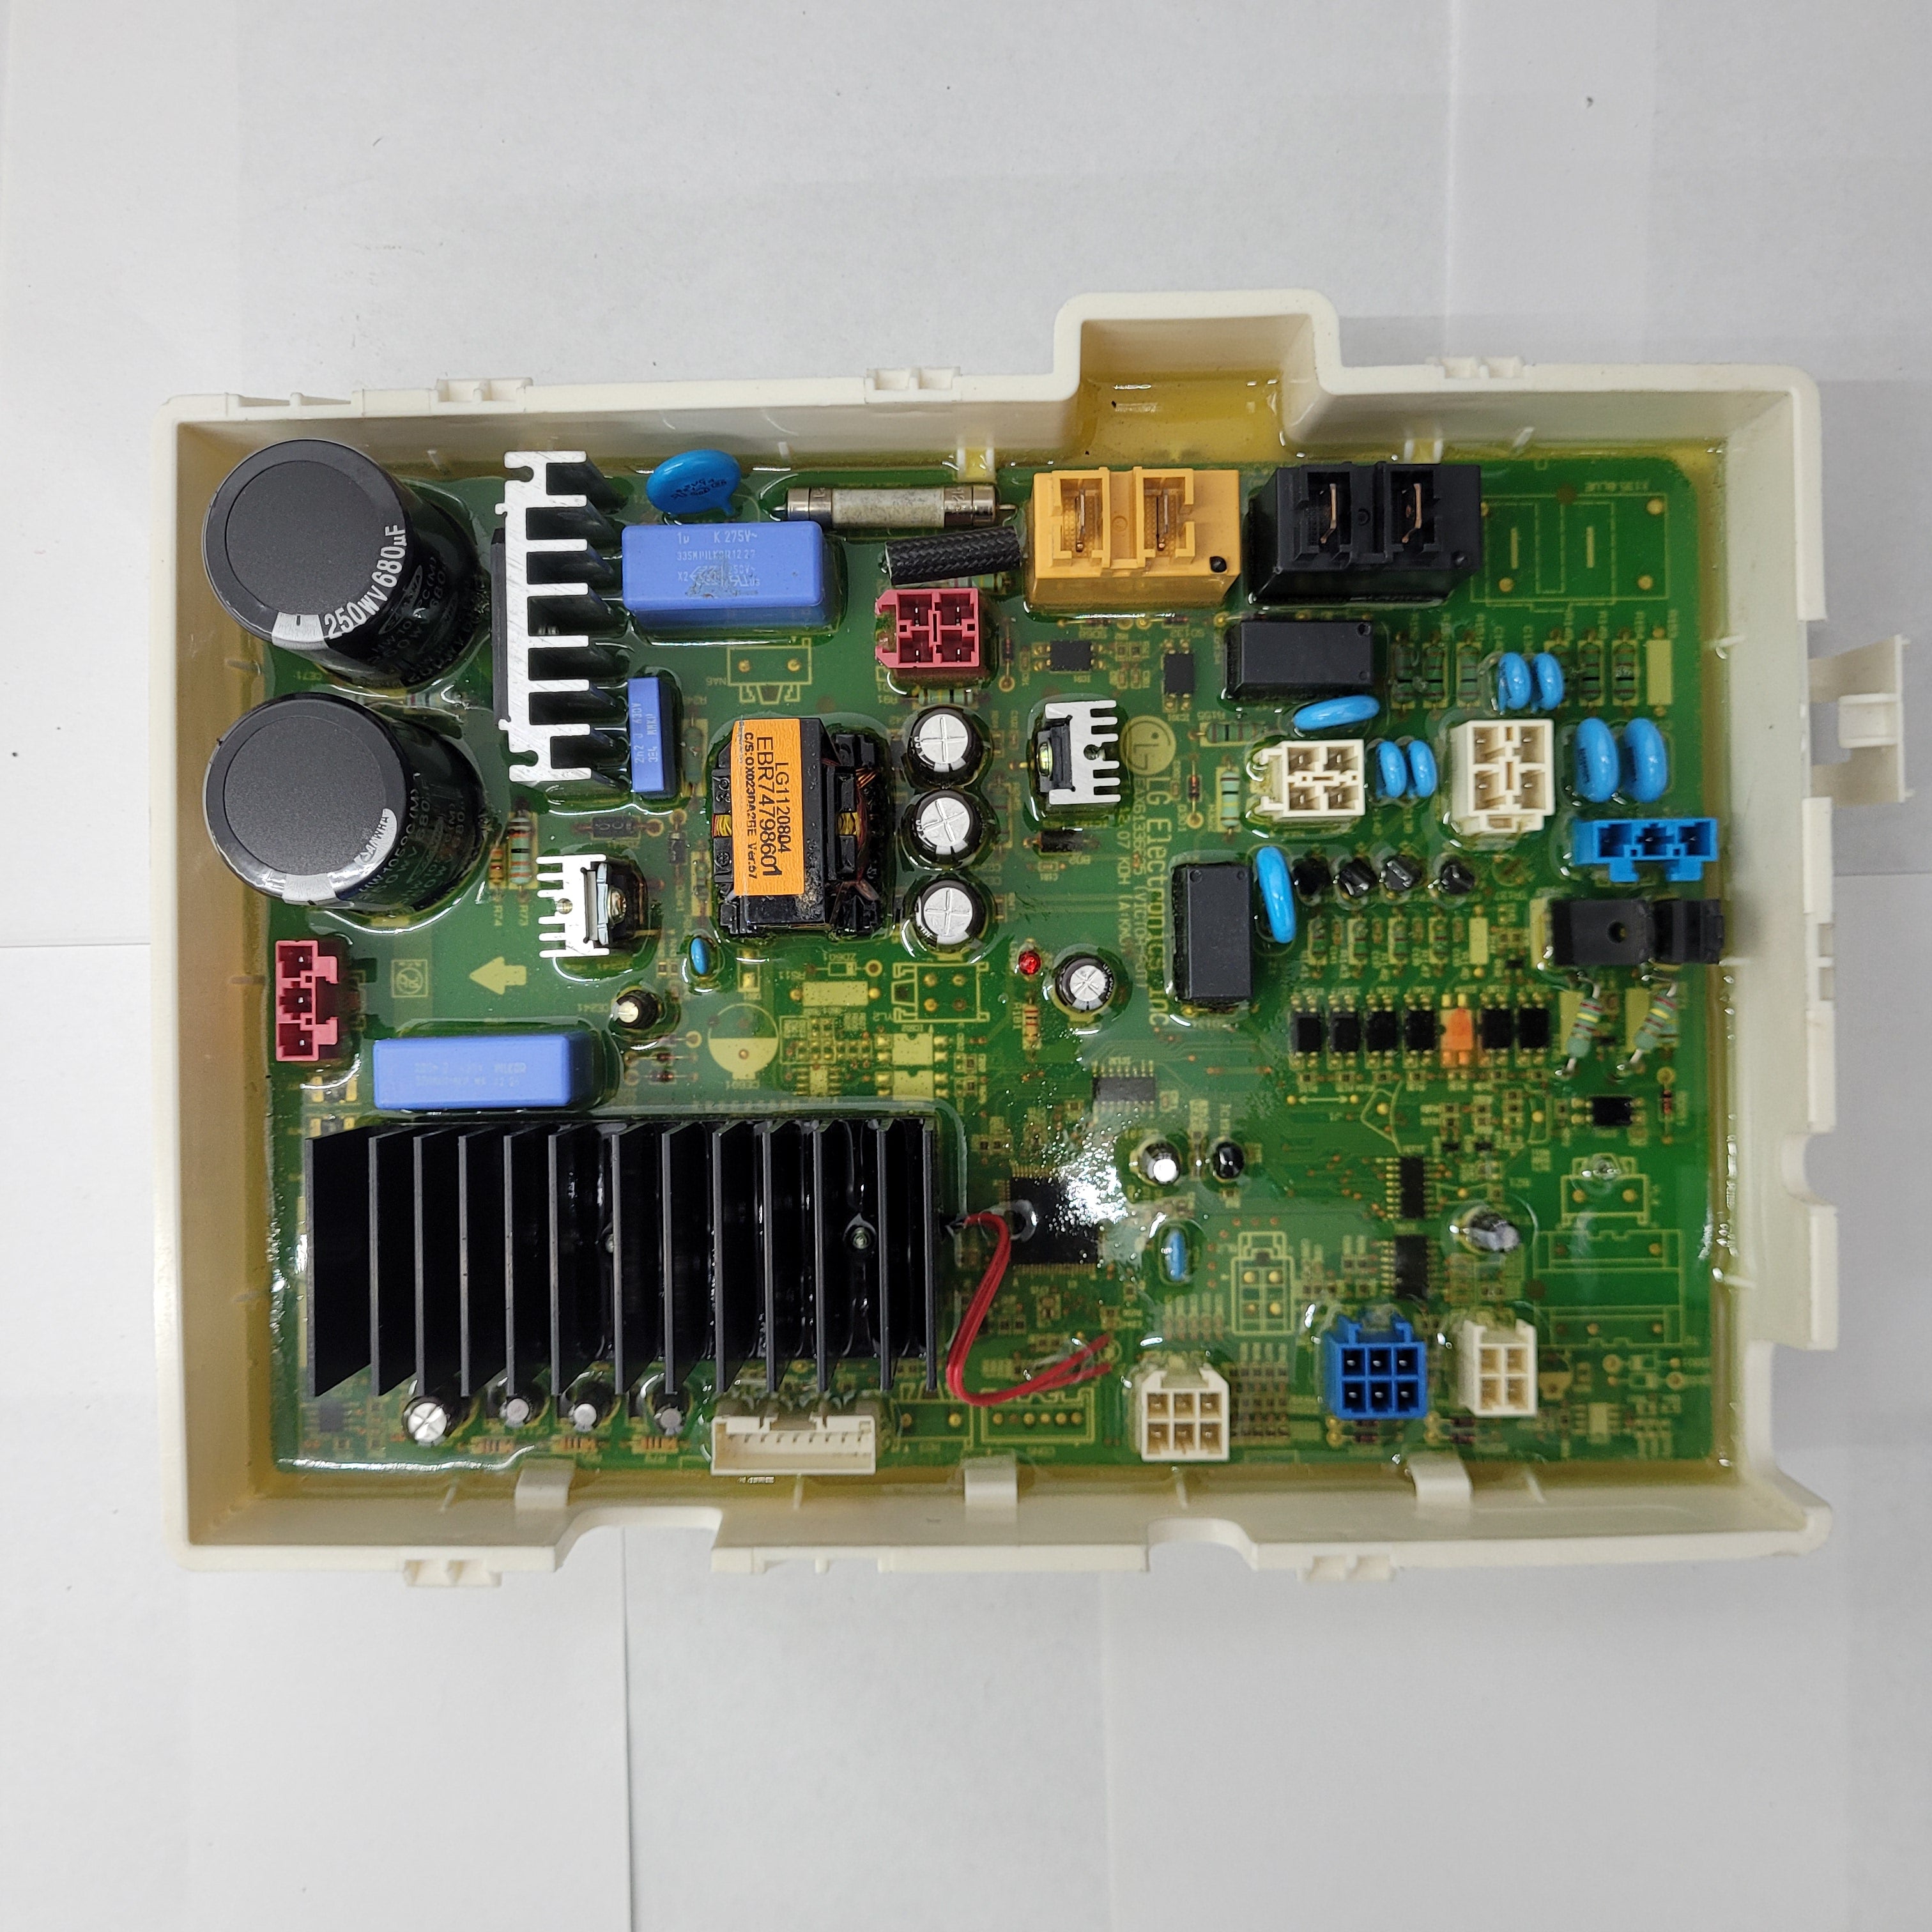 LG-Washer-Main-Control-Board-EBR74798601